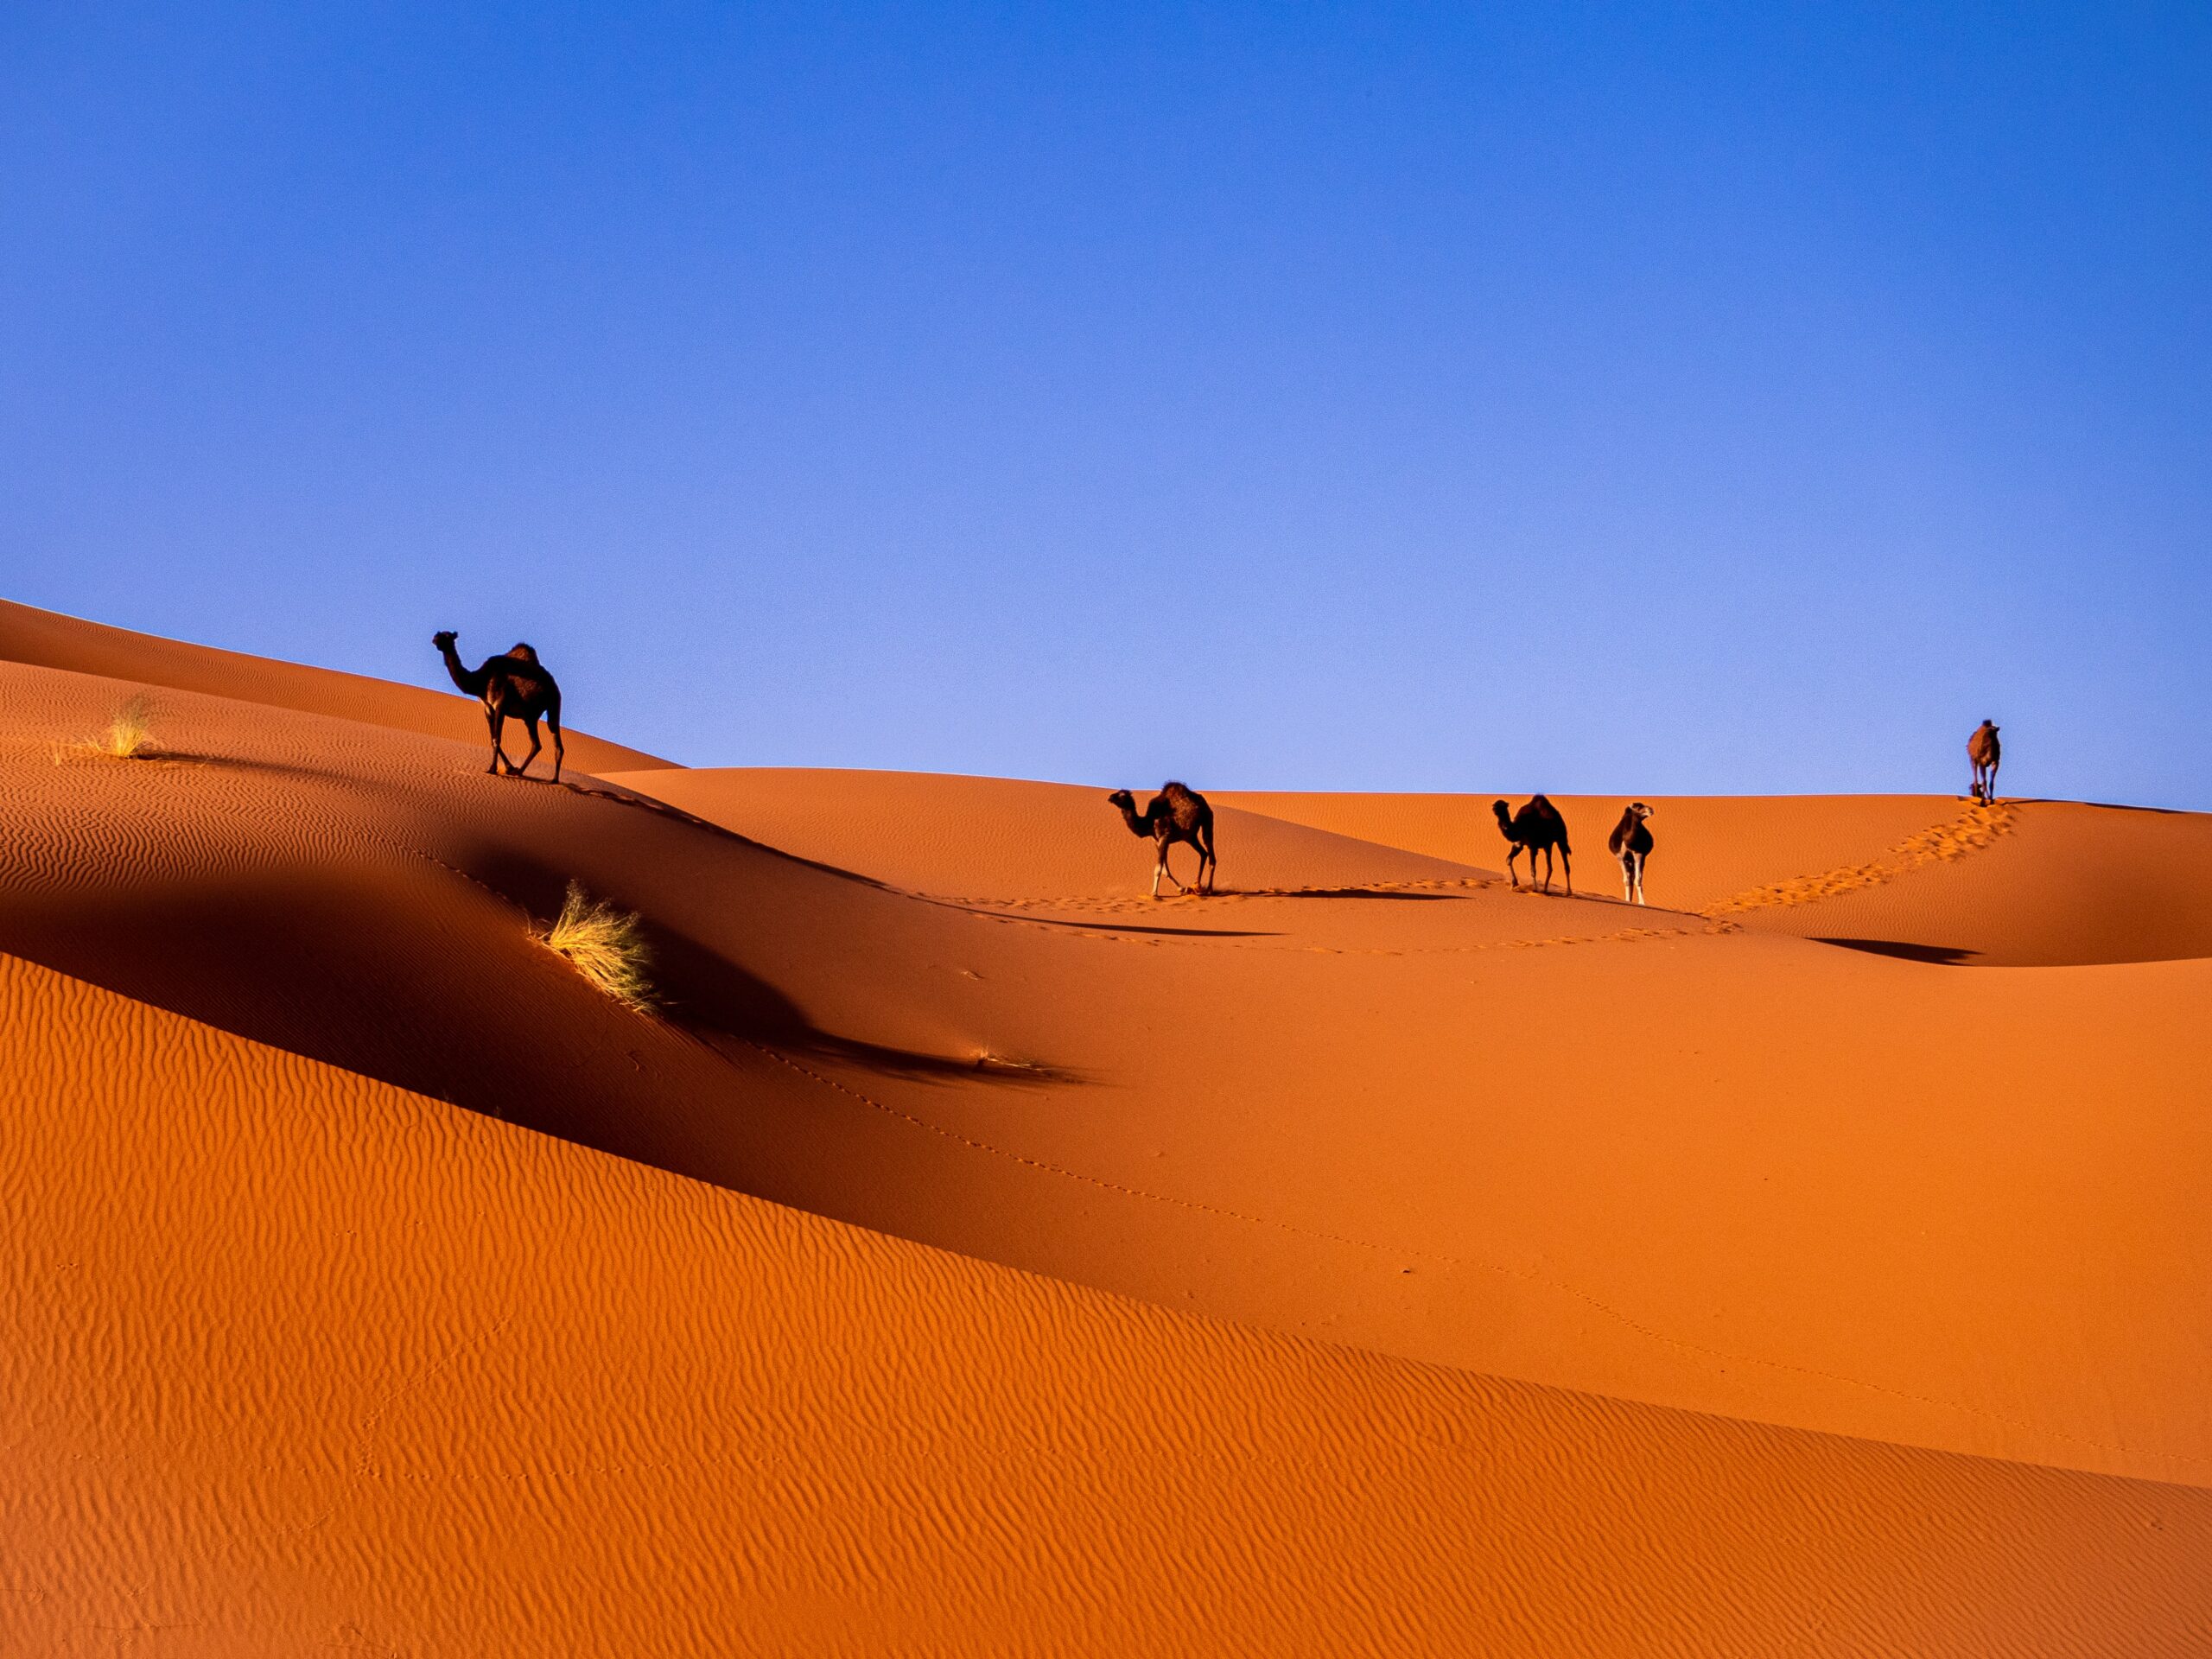 Deserto do Sahara, Merzouga, Marrocos com alguns camelos - Foto: Representa seguro viagem Marrocos.